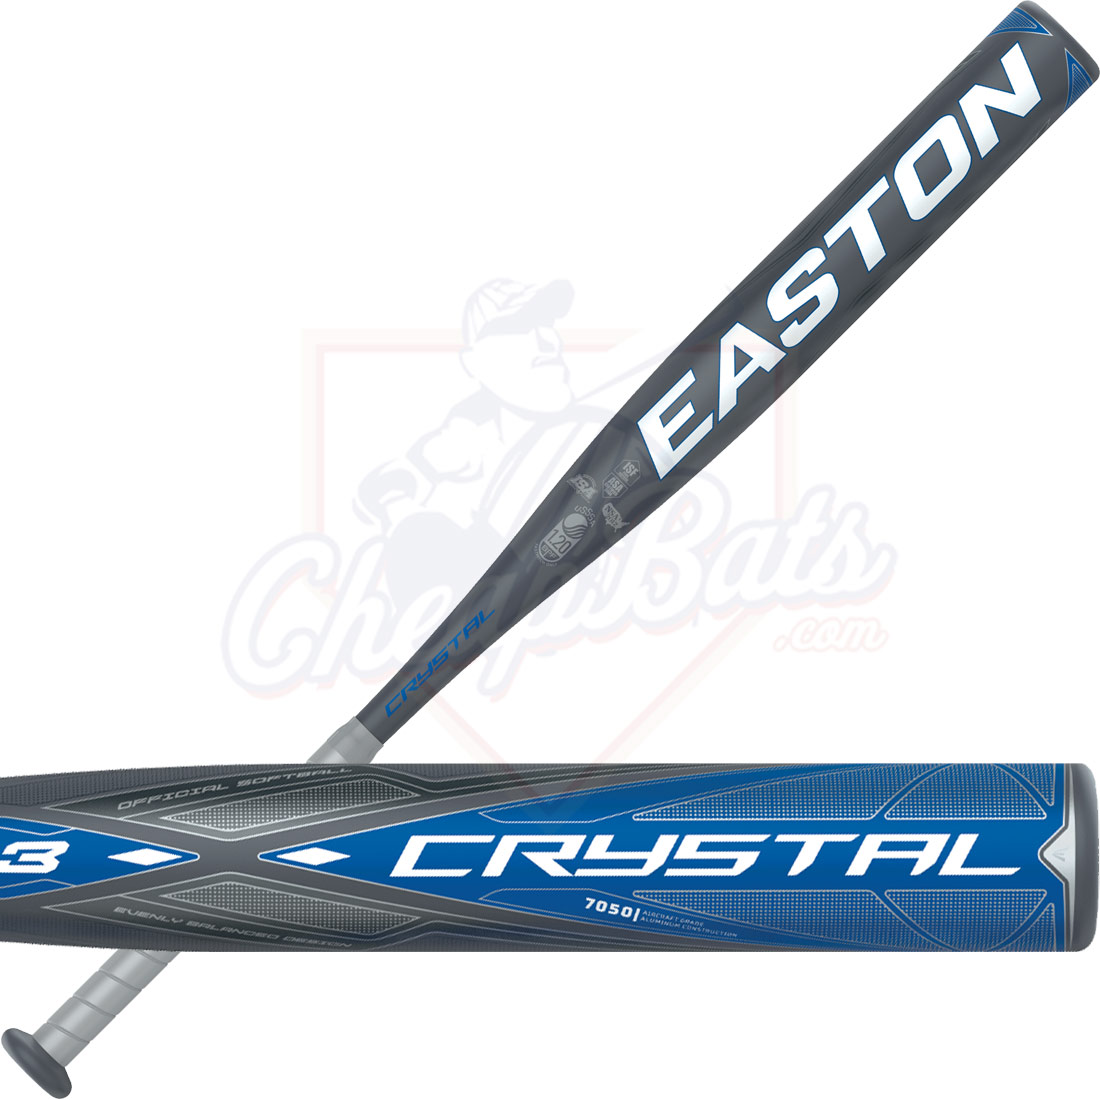 2020 Easton Crystal Fastpitch Softball Bat -13oz FP20CRY